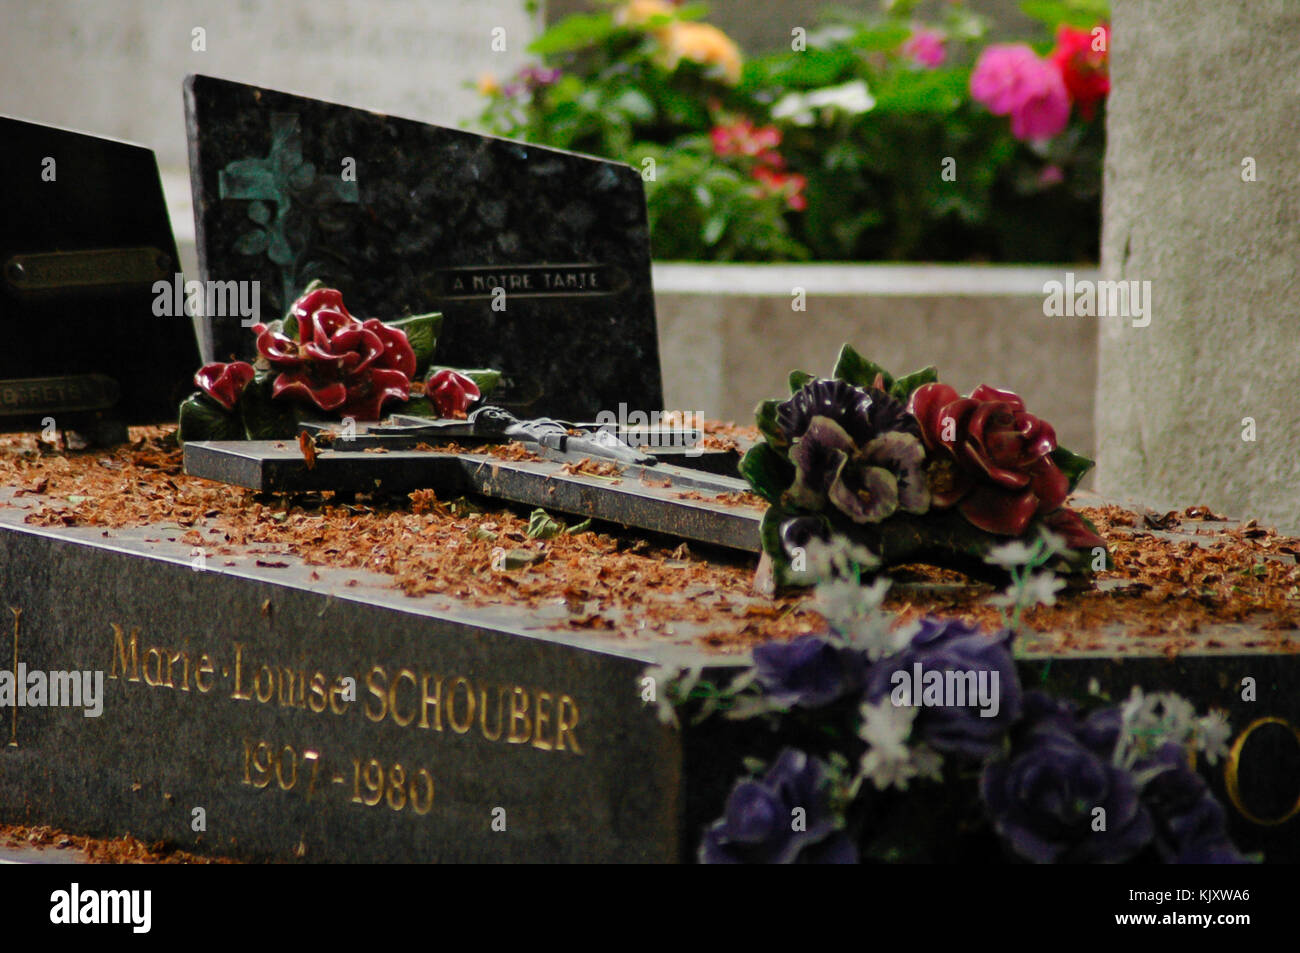 Tumba de Marie Louise Schouber con cruz y ramos de rosas en el cementerio de Père Lachaise, París, Francia Foto de stock